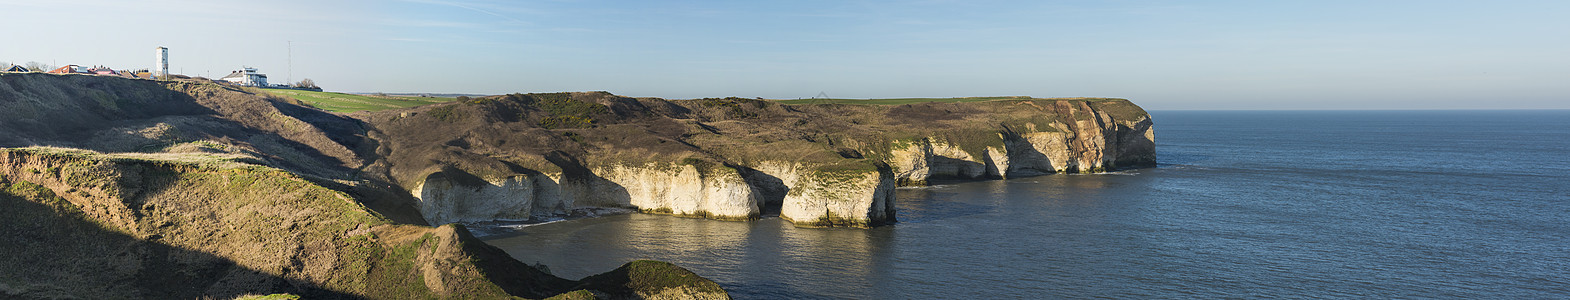 海平面地貌景象中的粉笔悬崖海景岩石侵蚀风景环境海岸沿海植被海湾地平线图片